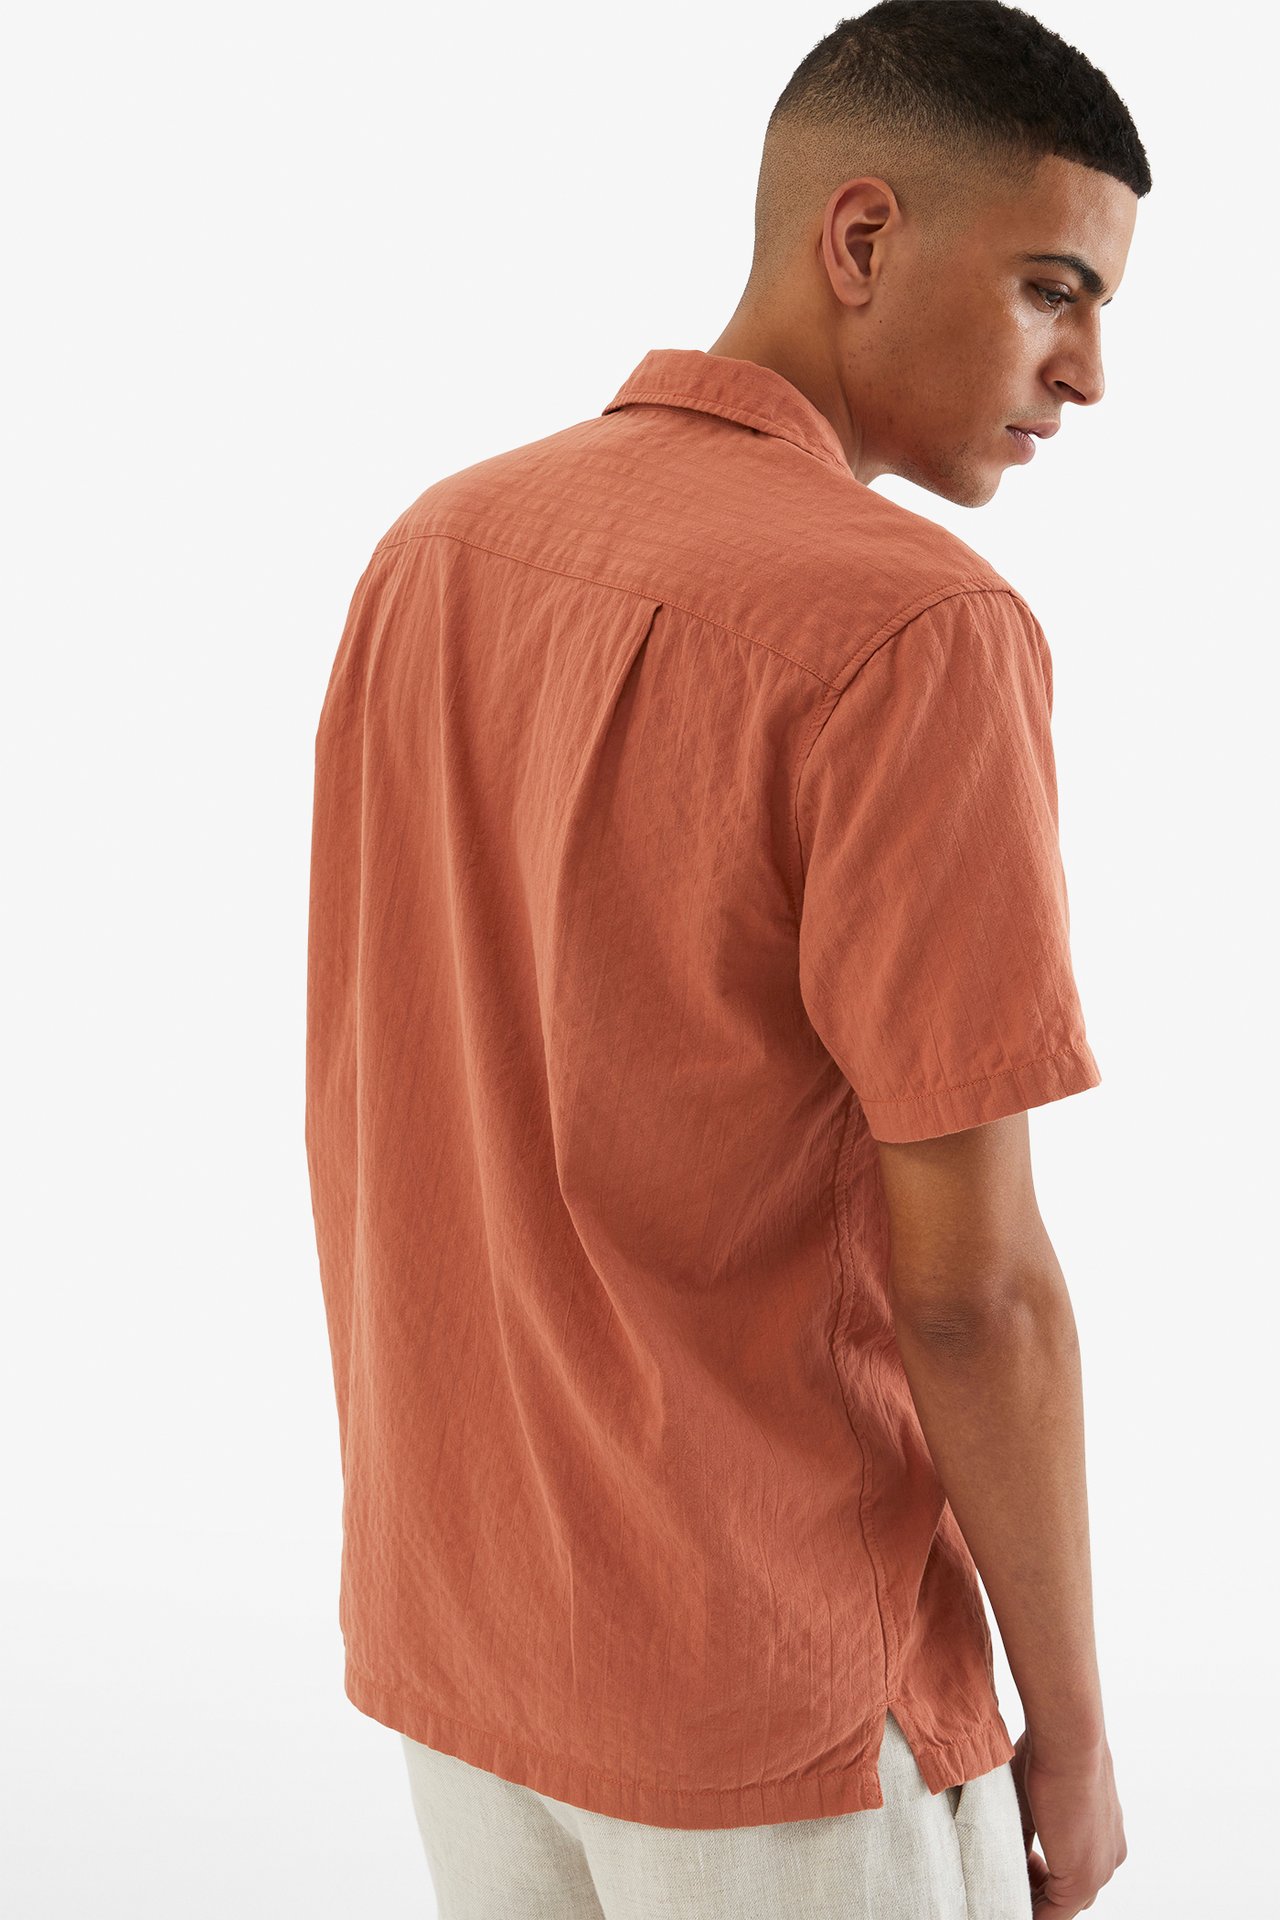 Resortskjorte i seersucker - Brun - 189cm / Storlek: M - 4